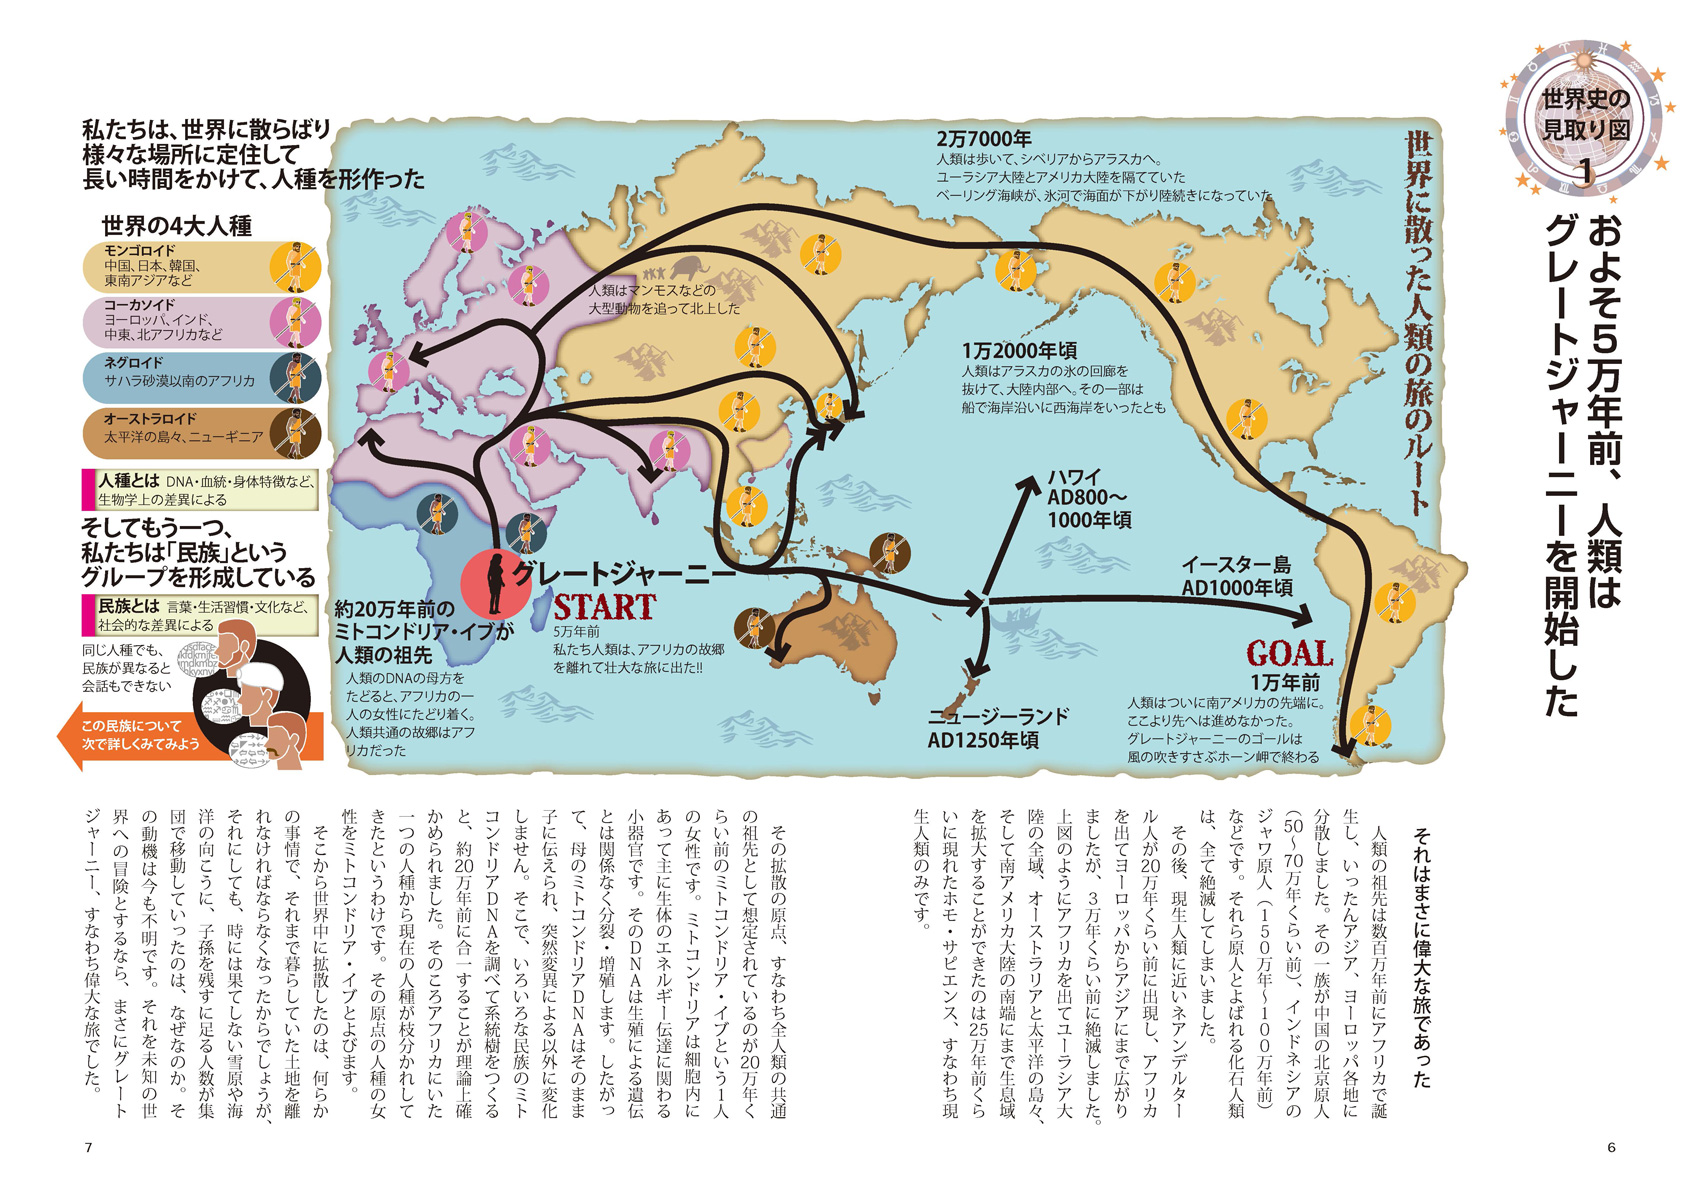 『図解でわかる 14歳から知る日本戦後政治史』ページサンプル2